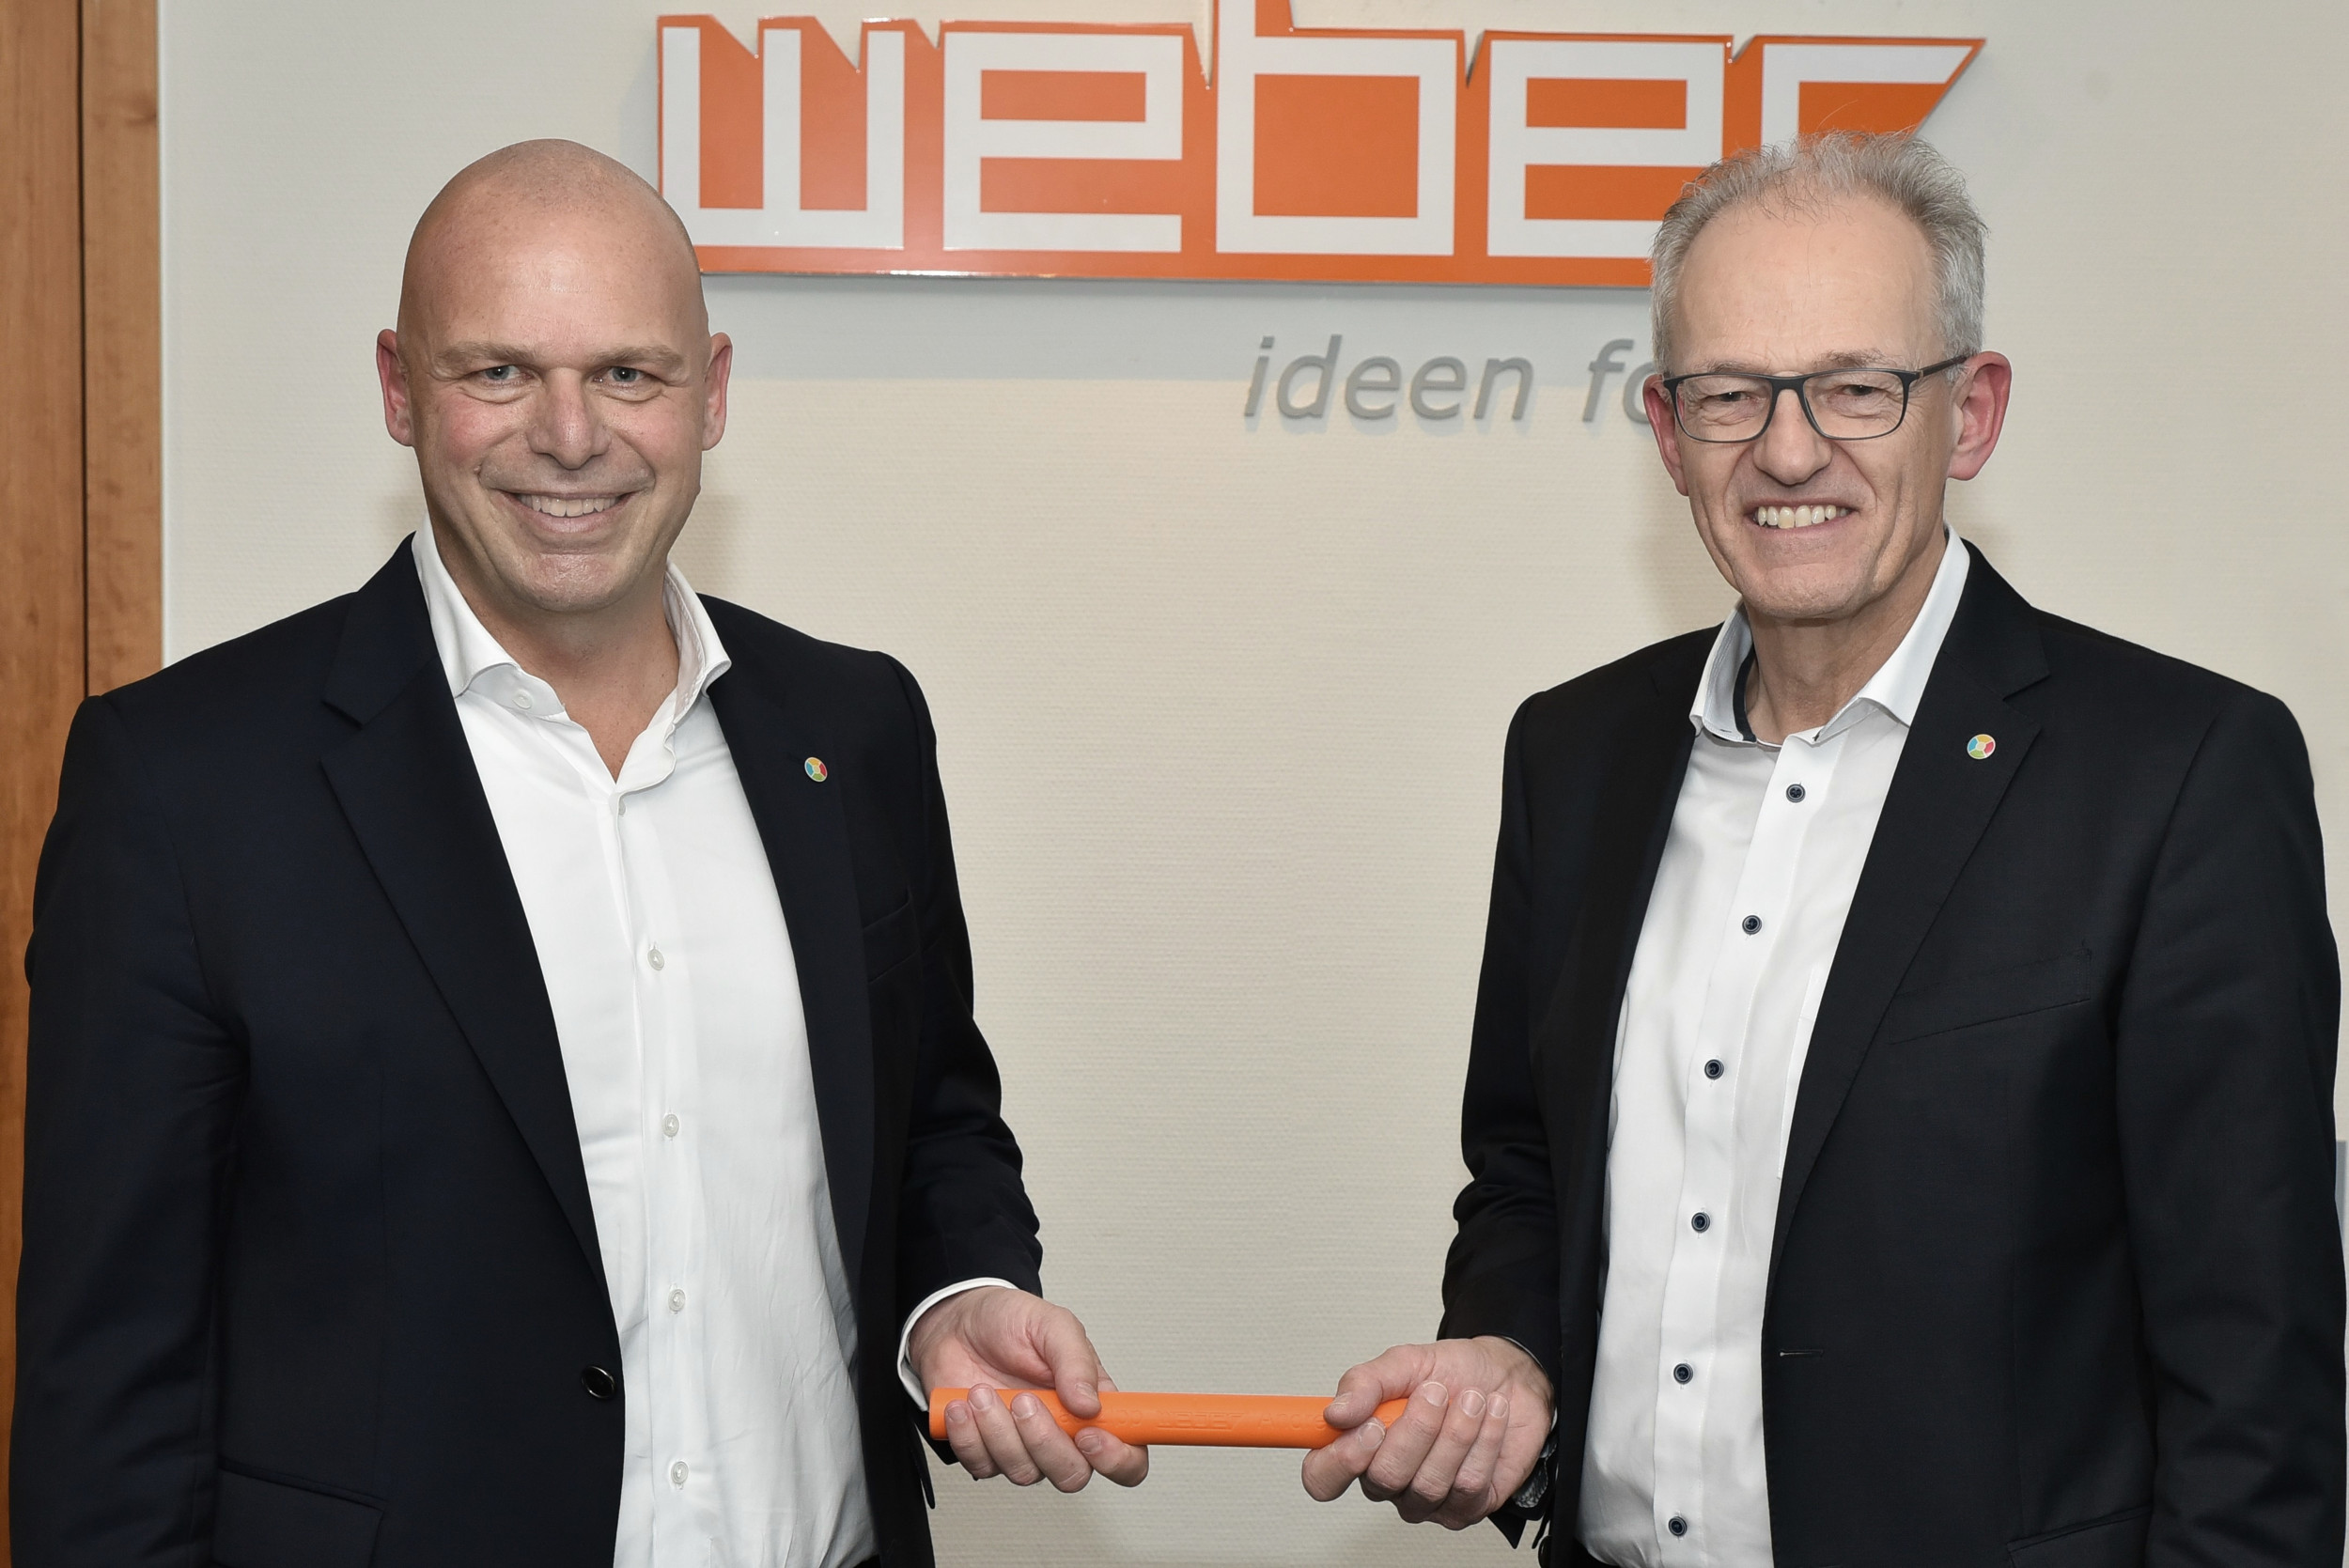 Die Weber Gruppe geht mittlerweile in die 4. Führungsgeneration, denn Dr. Thomas Zipp, bisheriger geschäftsführender Gesellschafter und CEO der Weber Group, übergab den Staffelstab an seinen CEO-Nachfolger Andreas Becker.